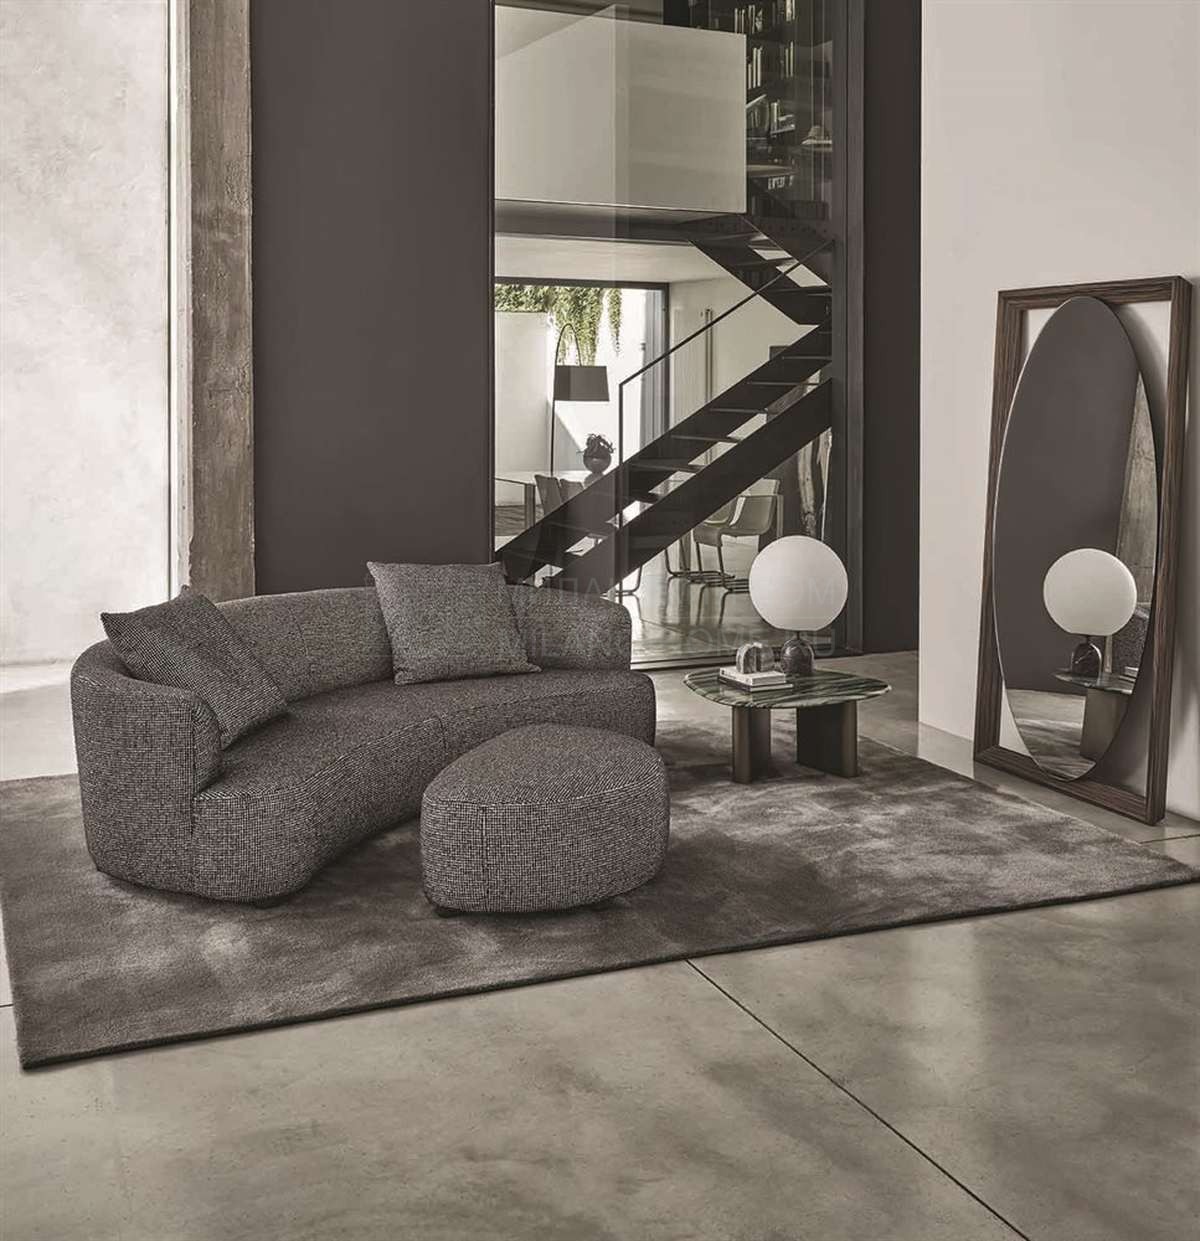 Прямой диван Yves sofa из Италии фабрики PORADA